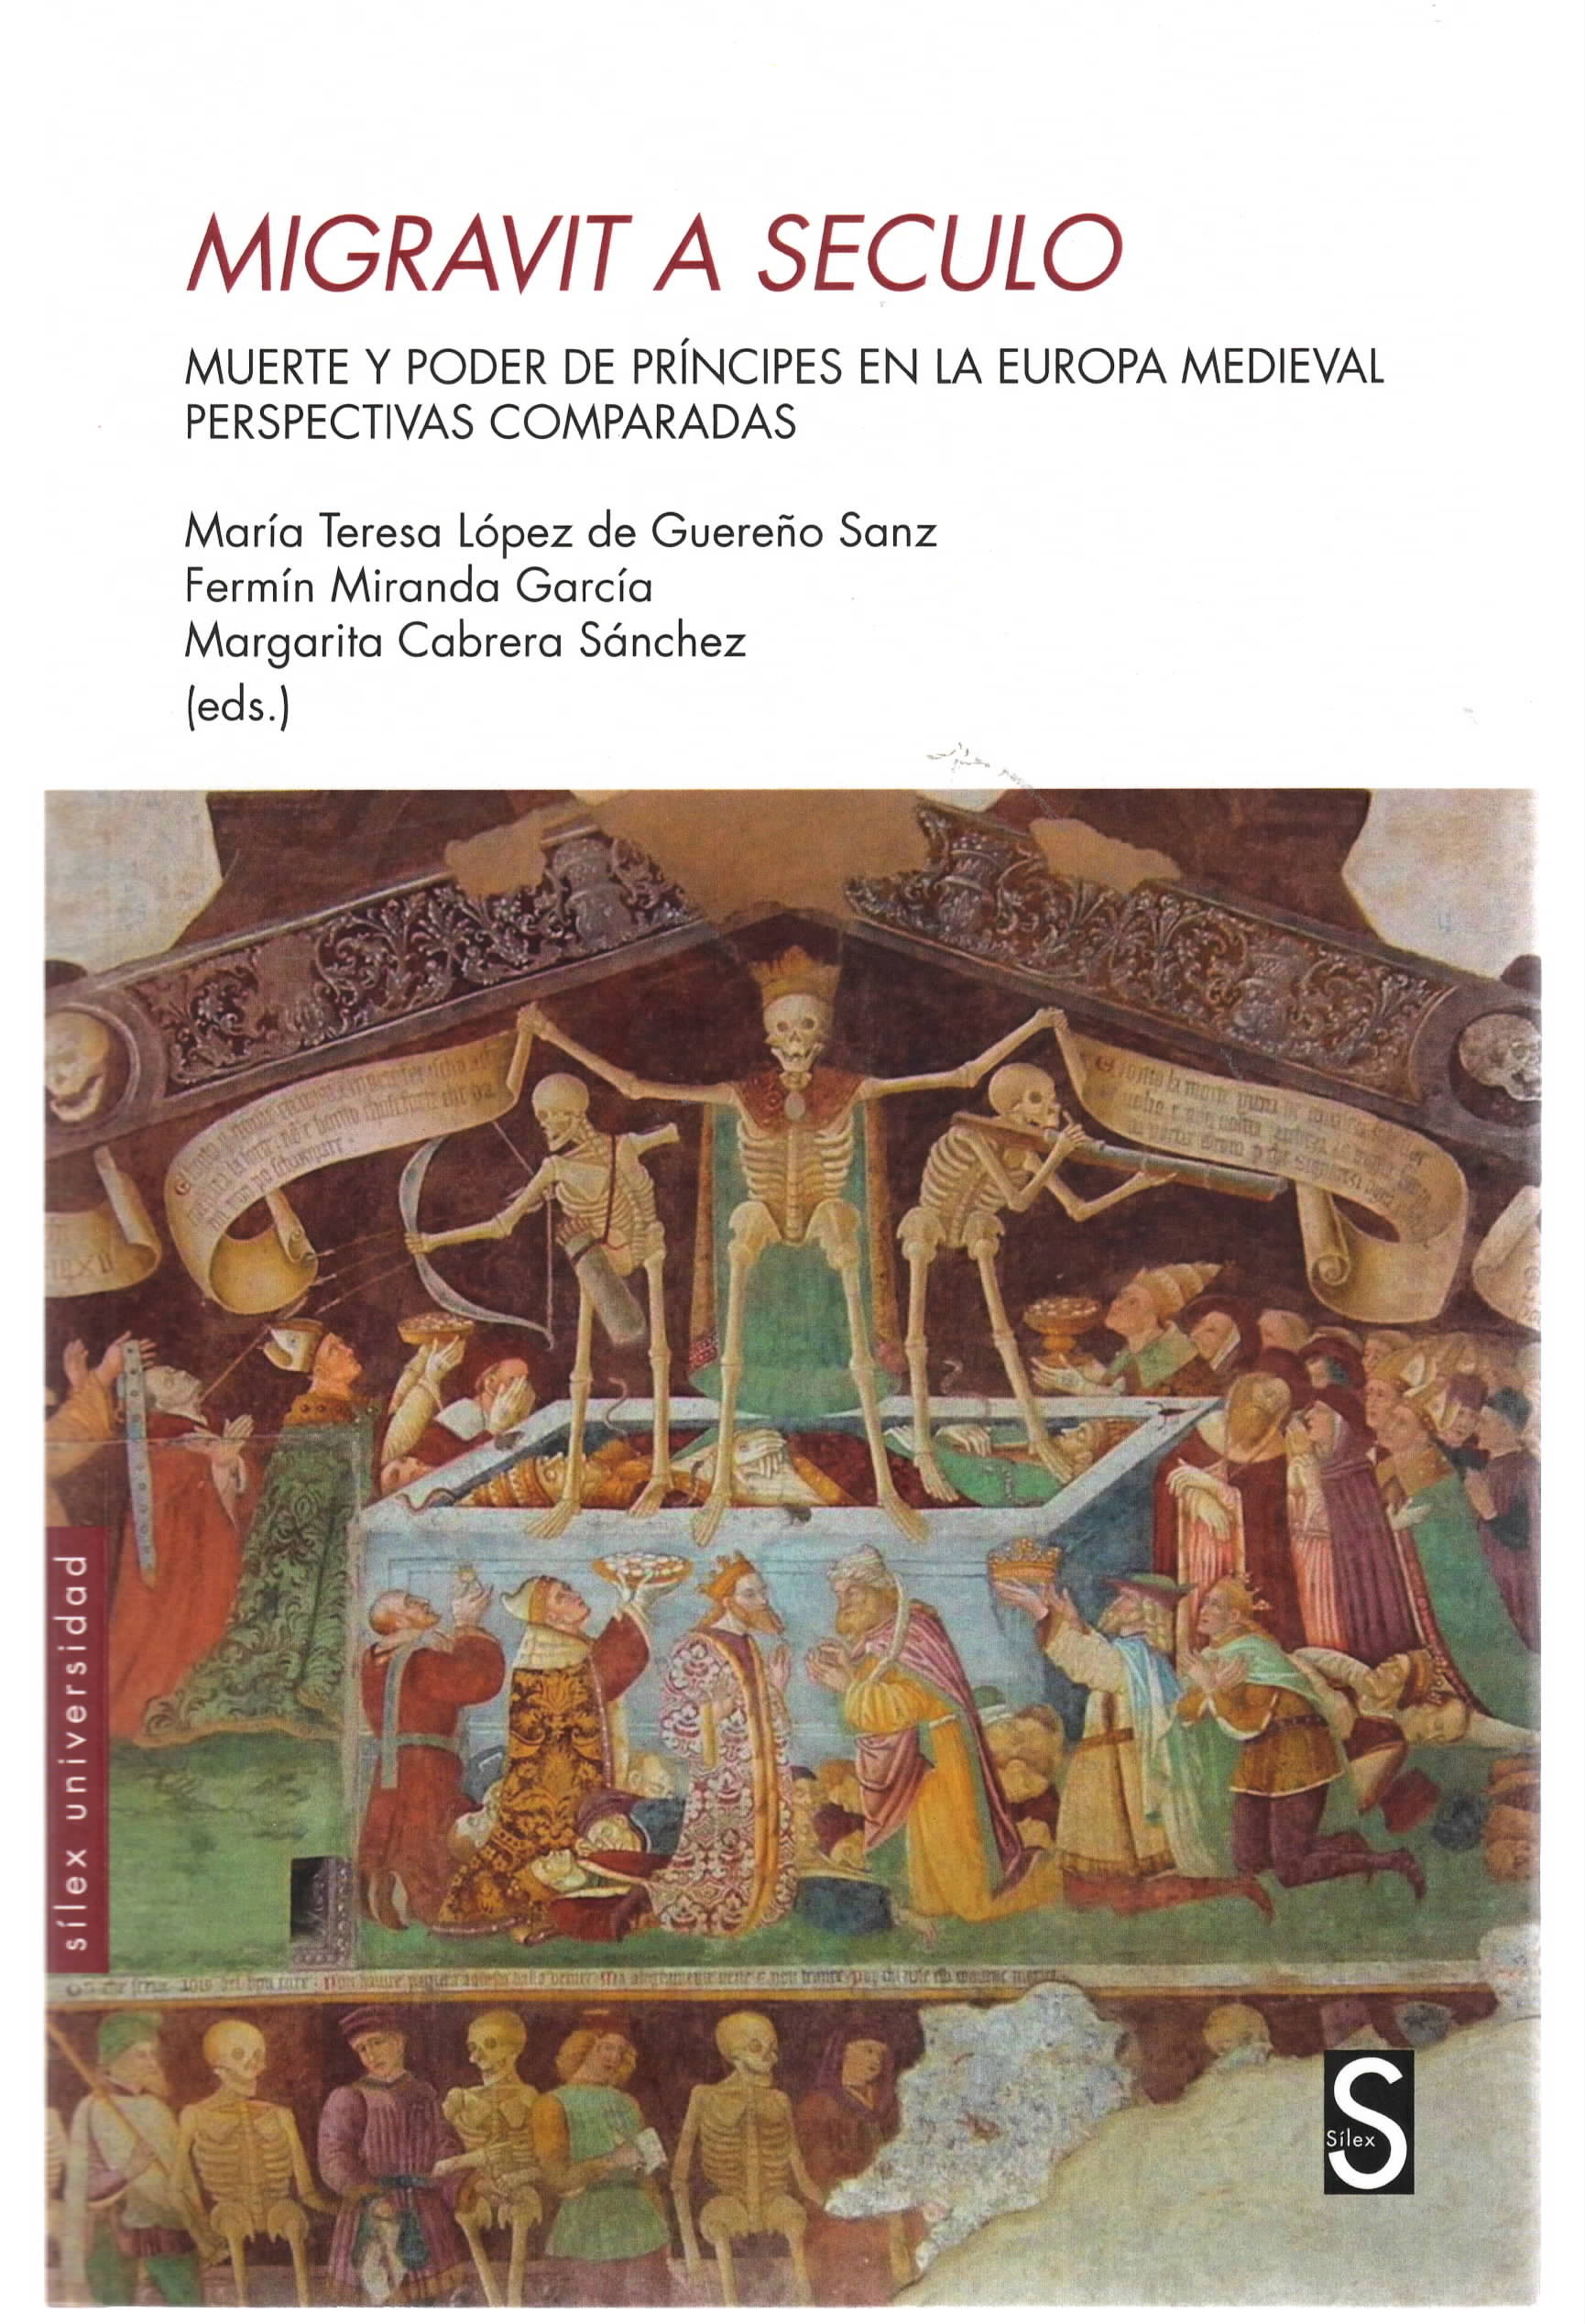 Migravit a seculo: Muerte y poder de príncipes en la Europa medieval. Perspectivas comparadas